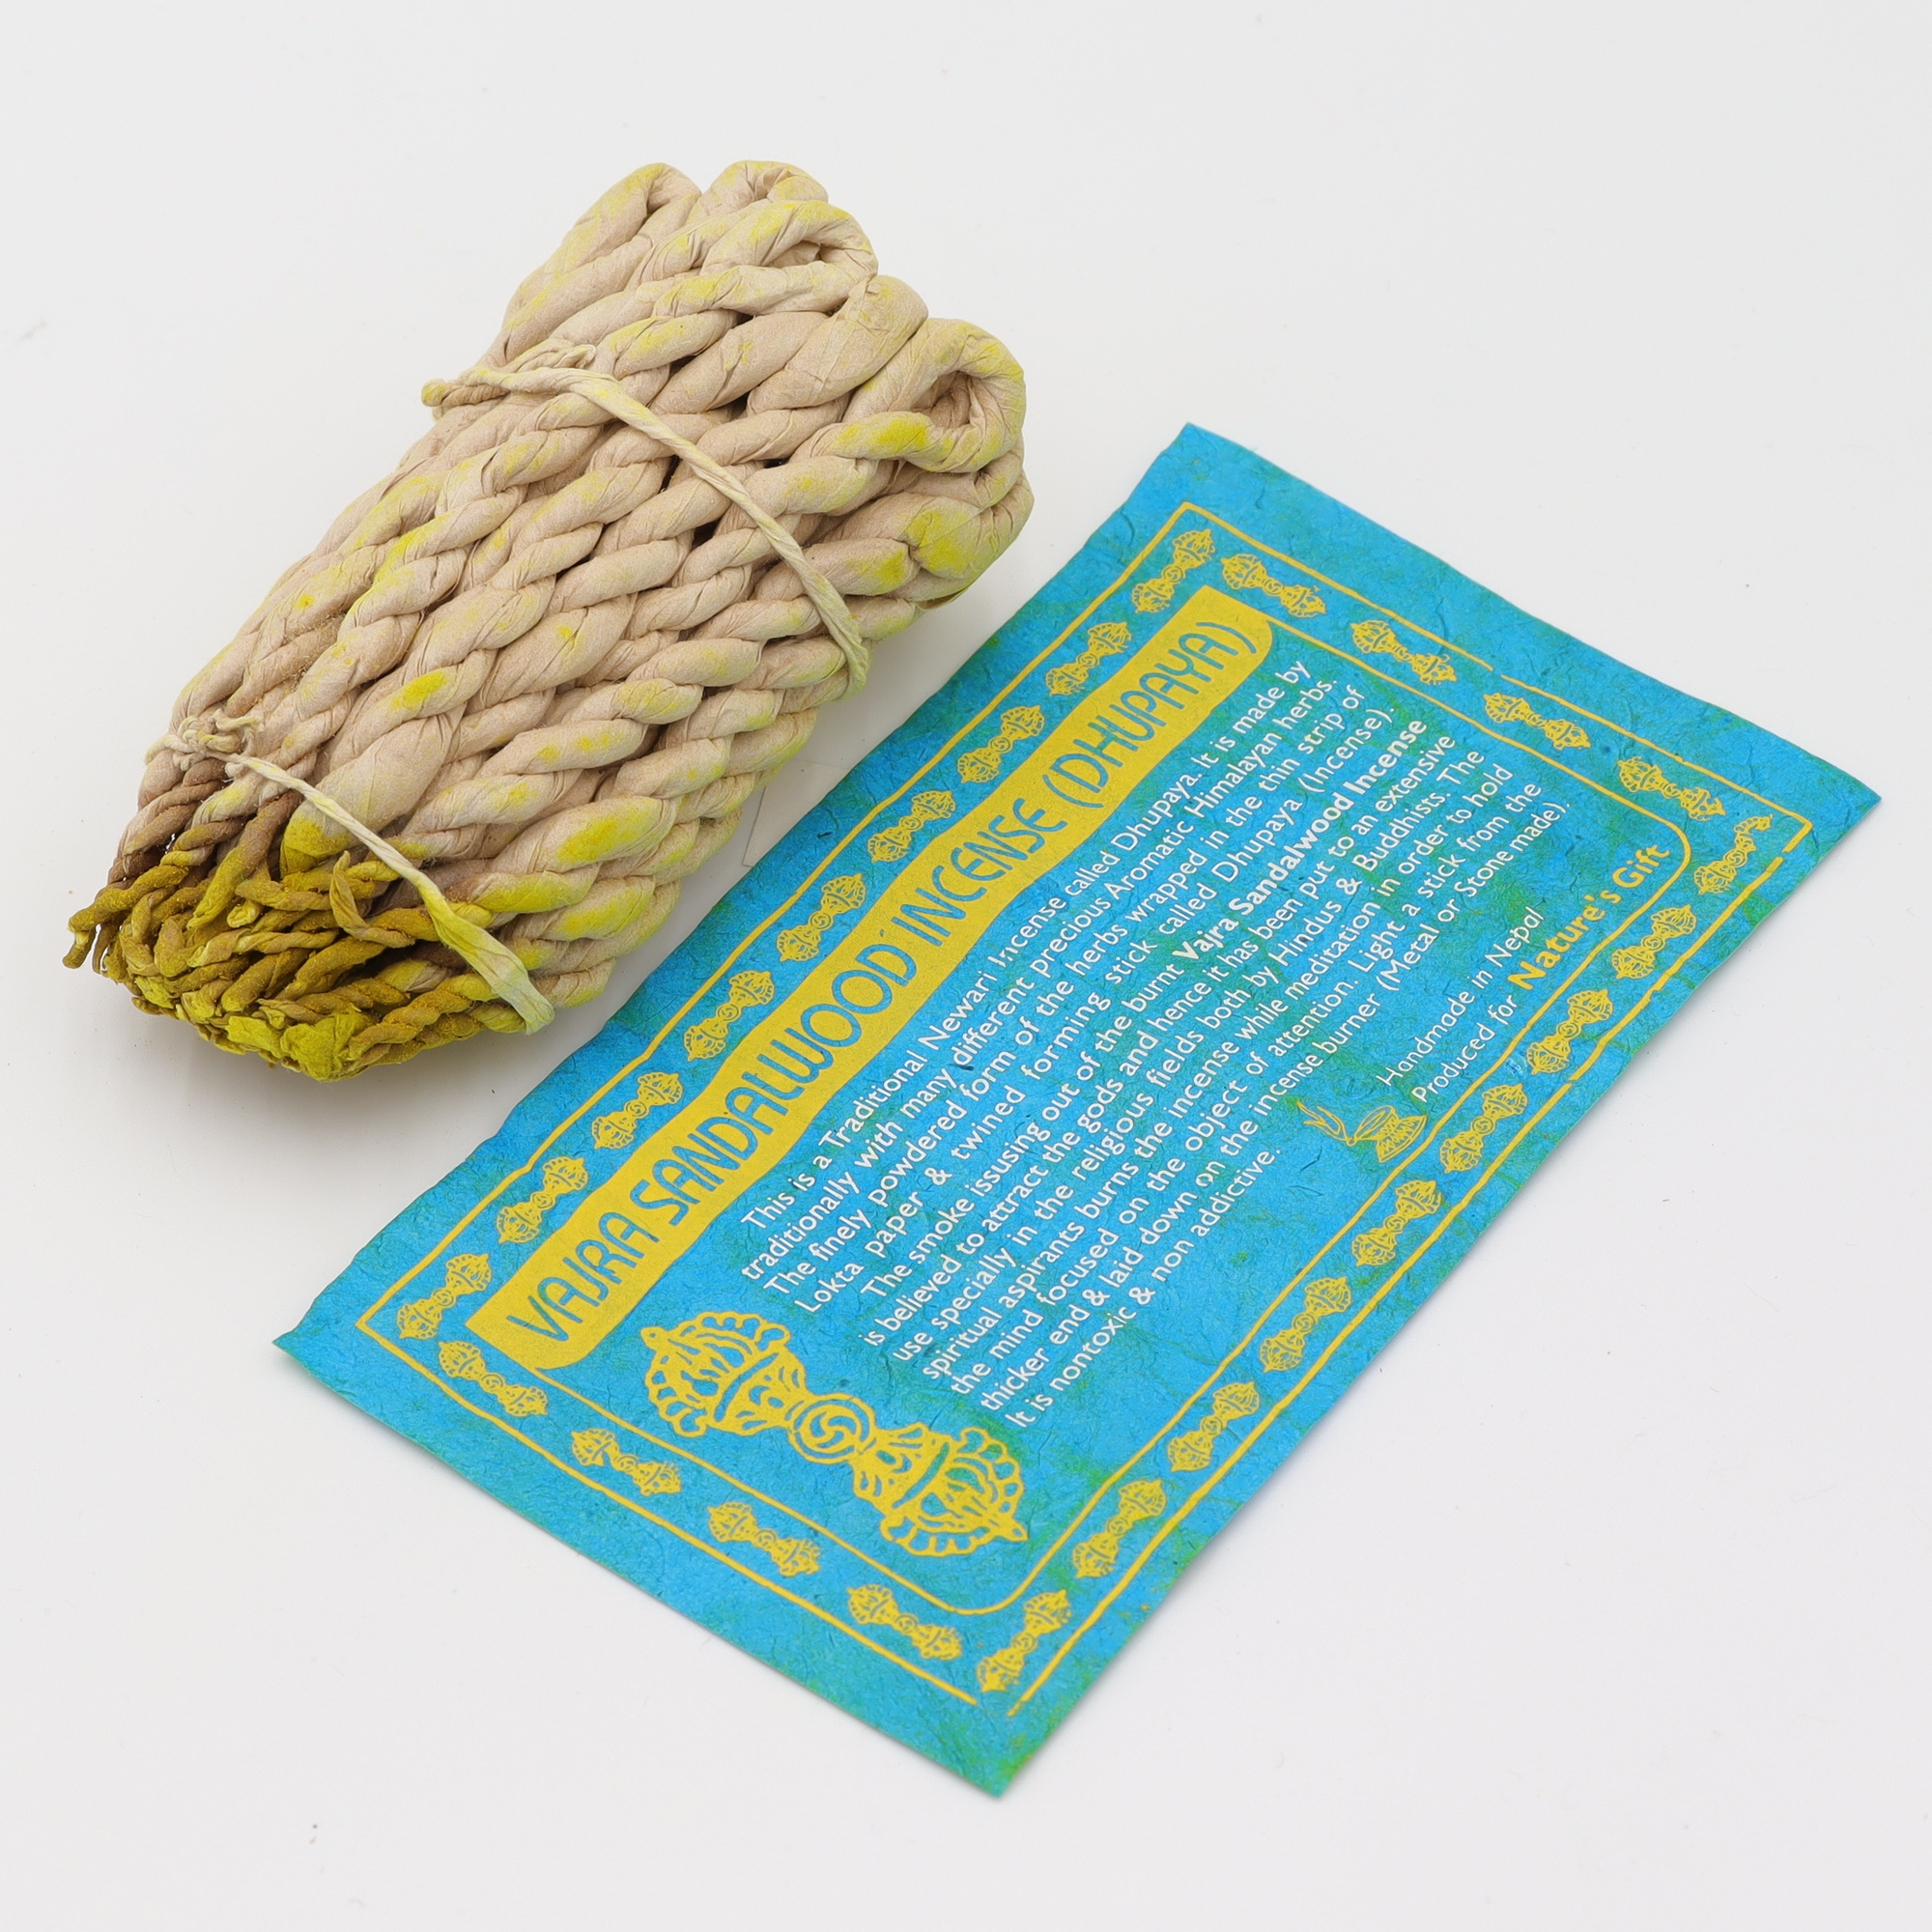 Nature's Gift - Sandalwood - Räucherschnüre aus Nepal, in feines Loktapapier handgedrehte String Incense aus rein natürlichen Zutaten